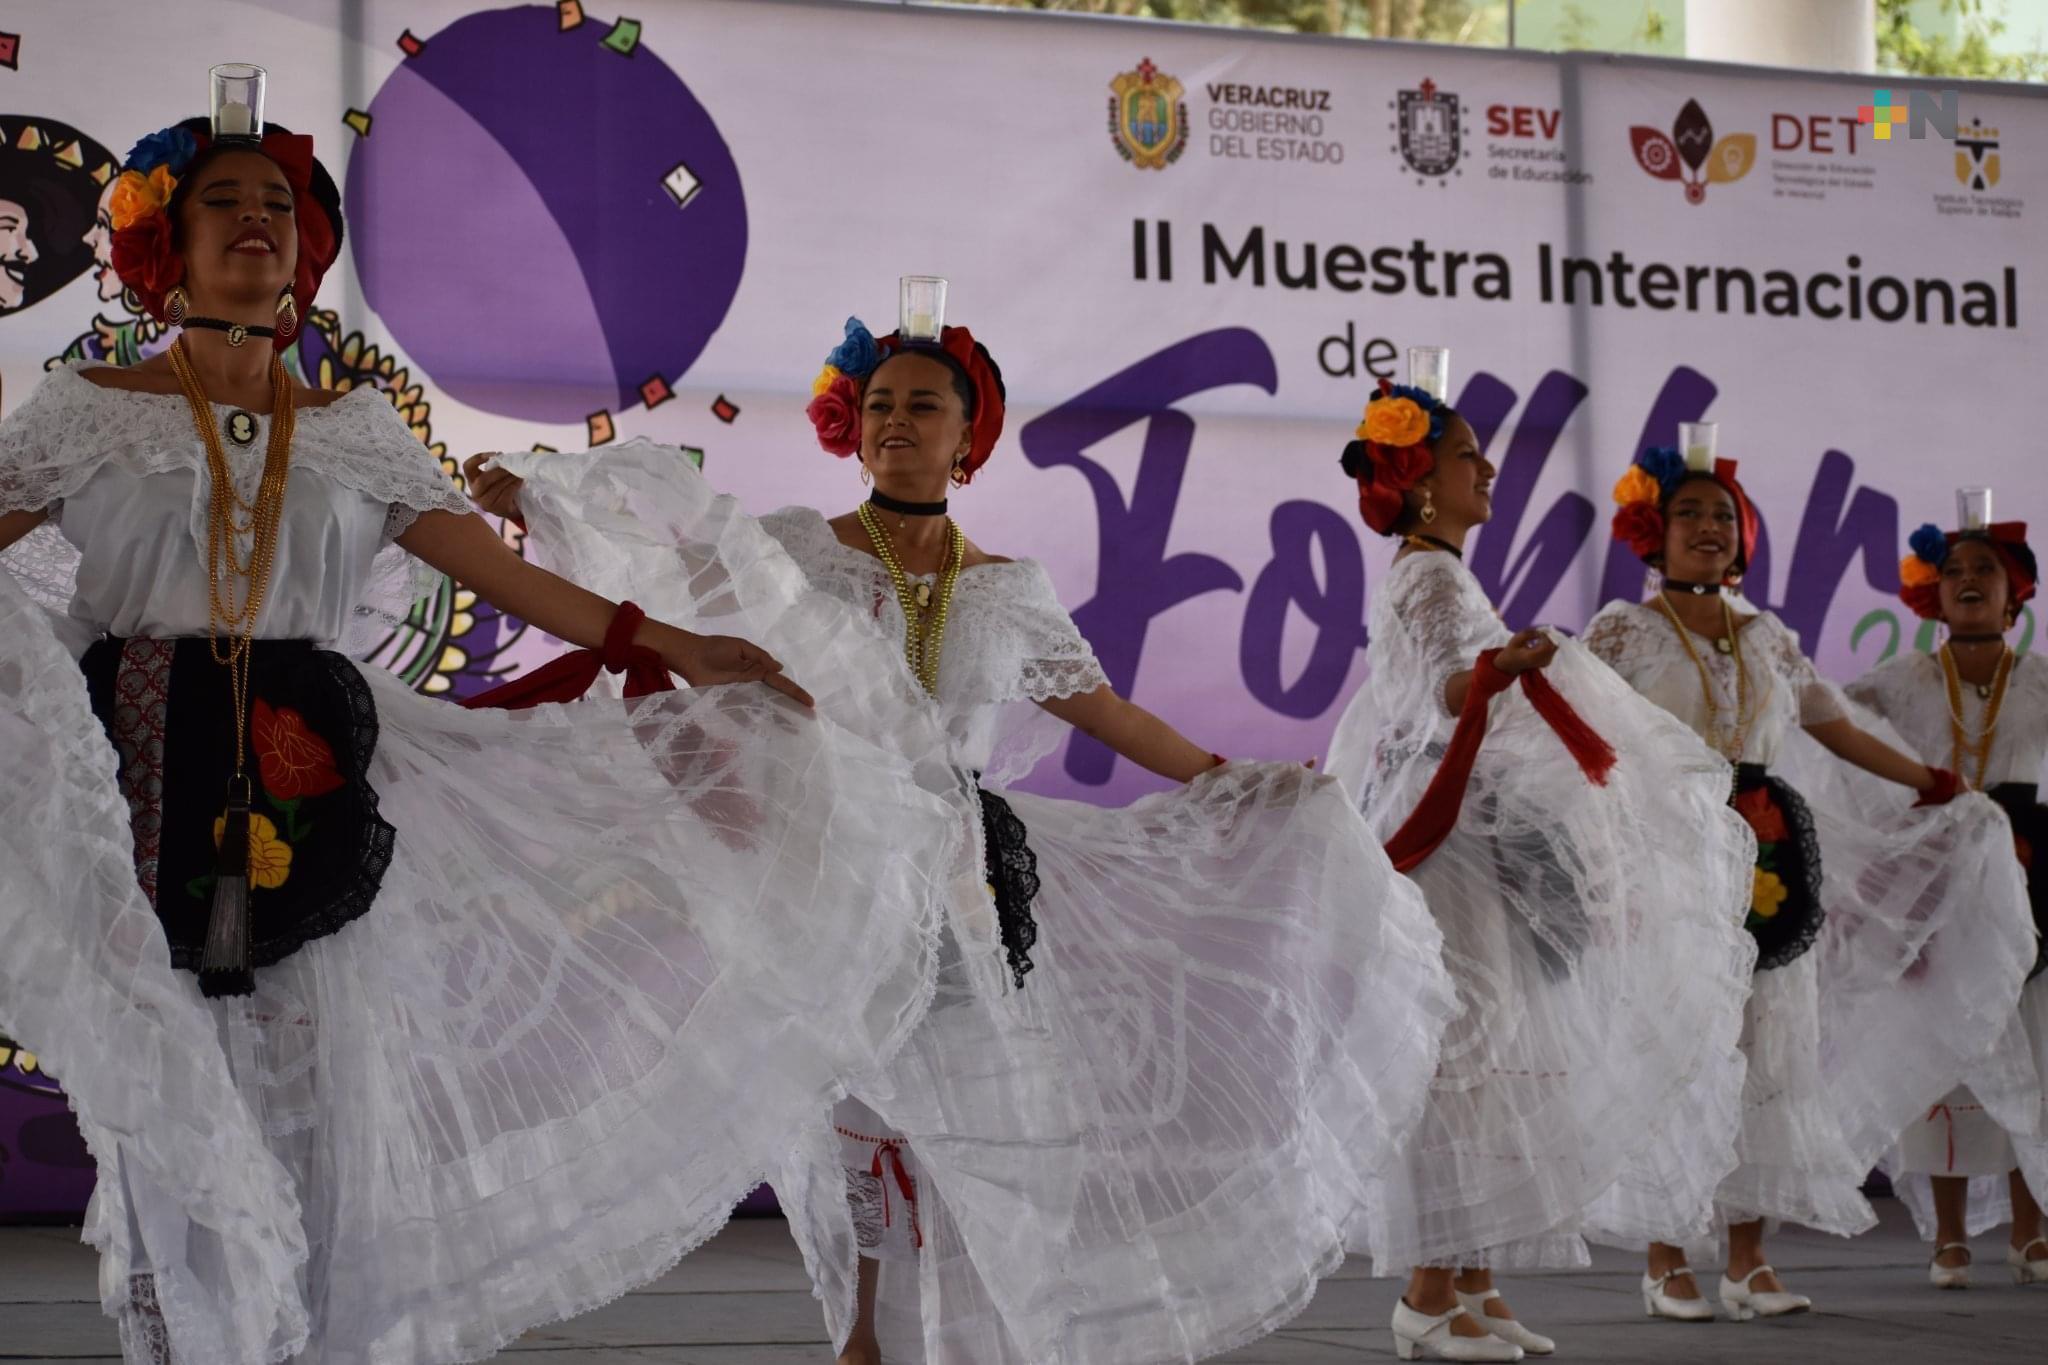 Es anfitrión el Tec de Xalapa de la segunda Muestra Internacional de Folklore 2022